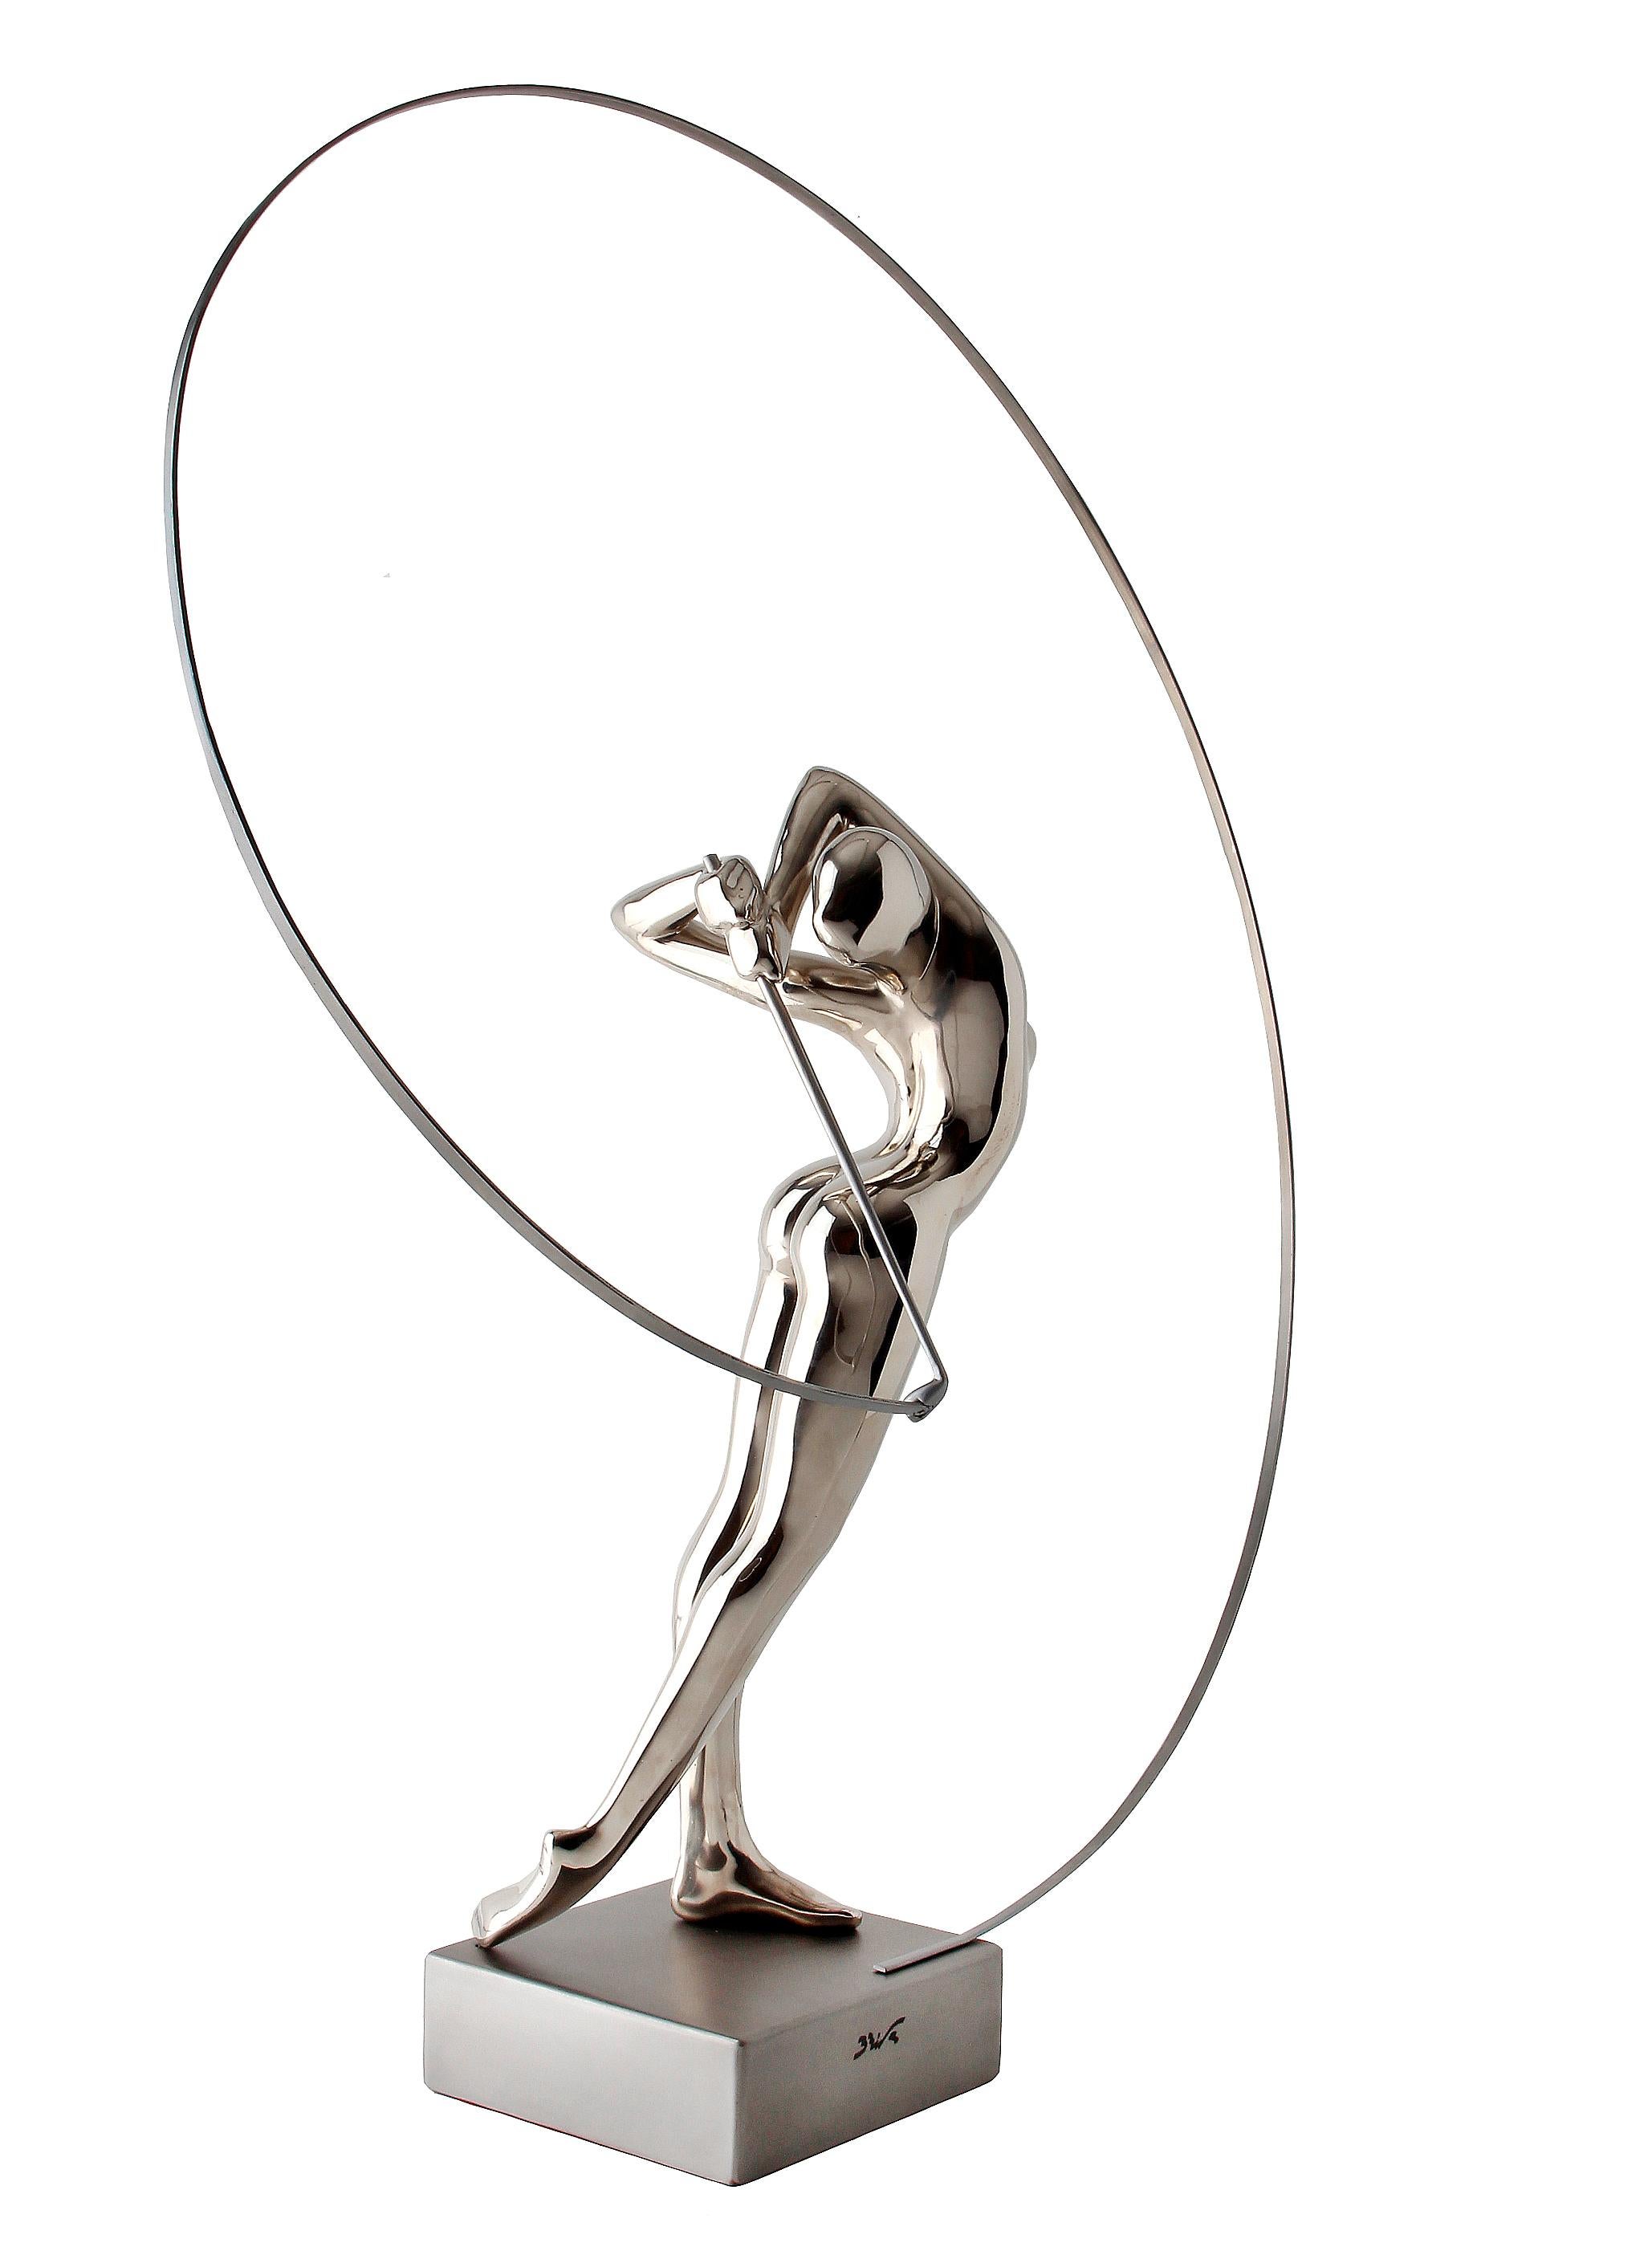  Bernard Rives  Golf  Silver  Swing original resin sculpture For Sale 2